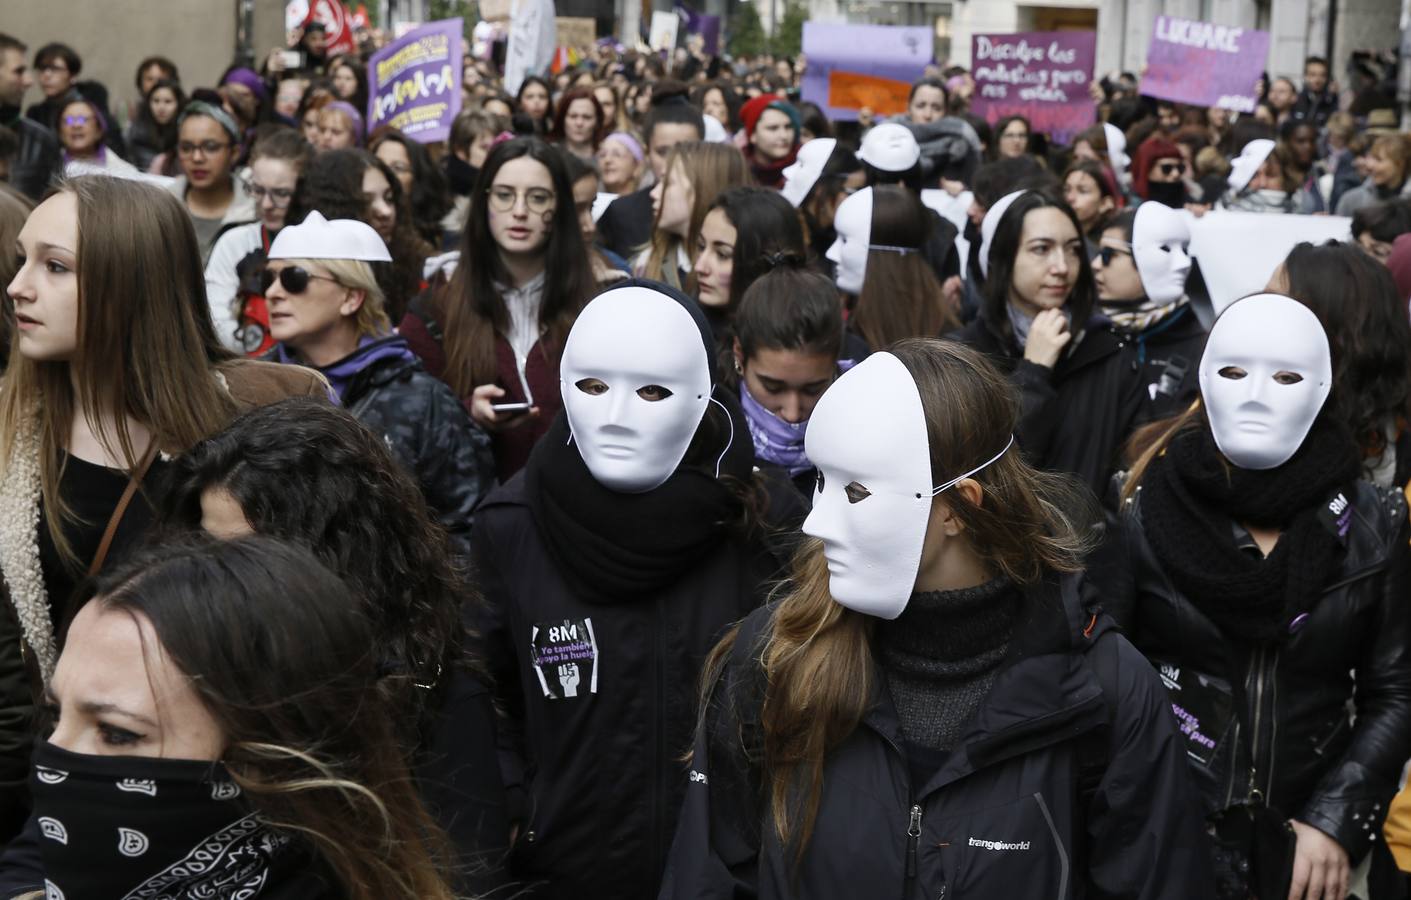 Fotos: Manifestación estudiantil convocada por la Asamblea Feminista de Valladolid